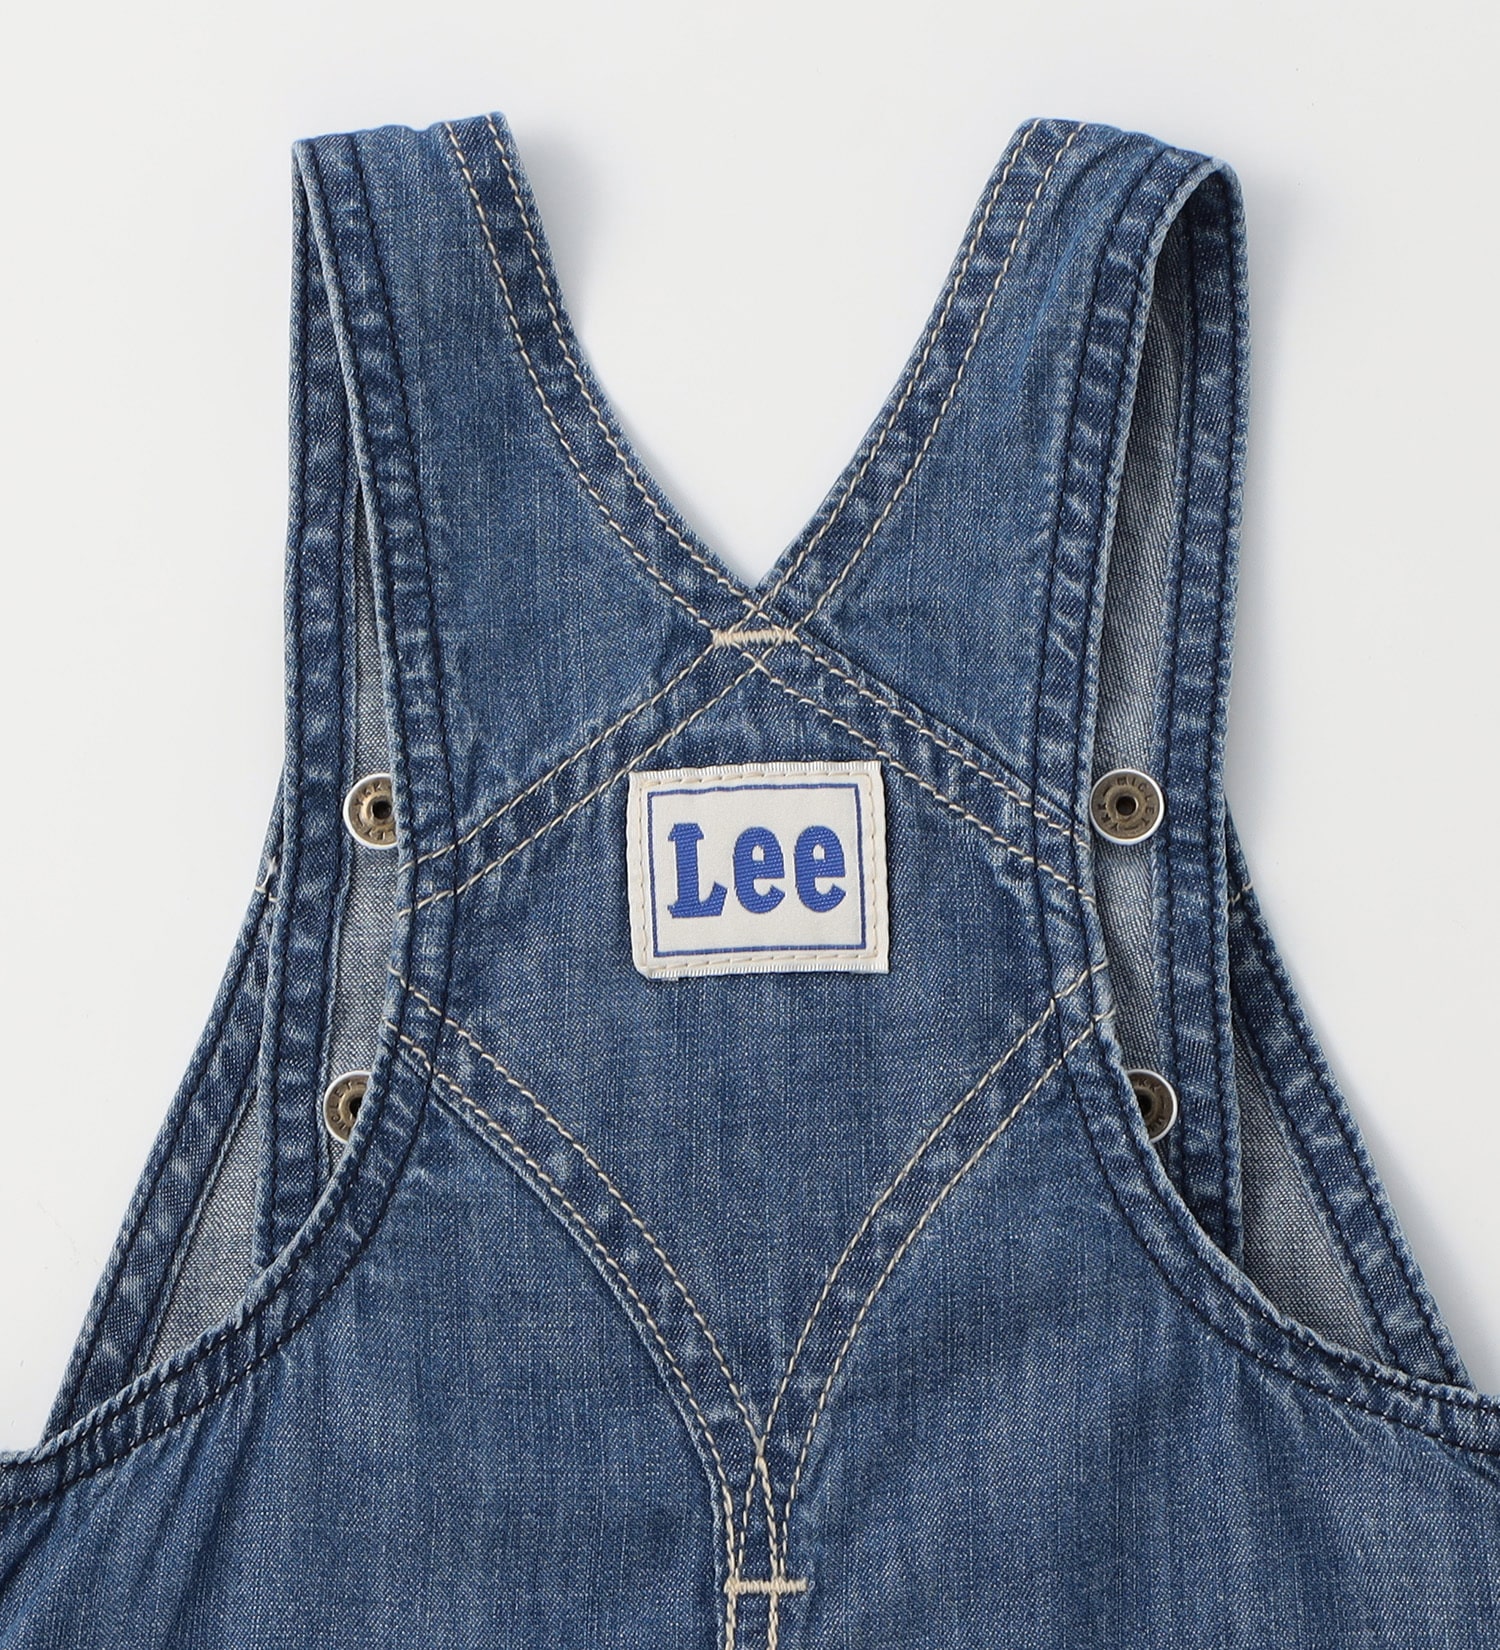 Lee(リー)の【70-90cm】ベビー ファーストデニムオーバーオールスカート|オールインワン/ジャンパースカート/キッズ|中色ブルー